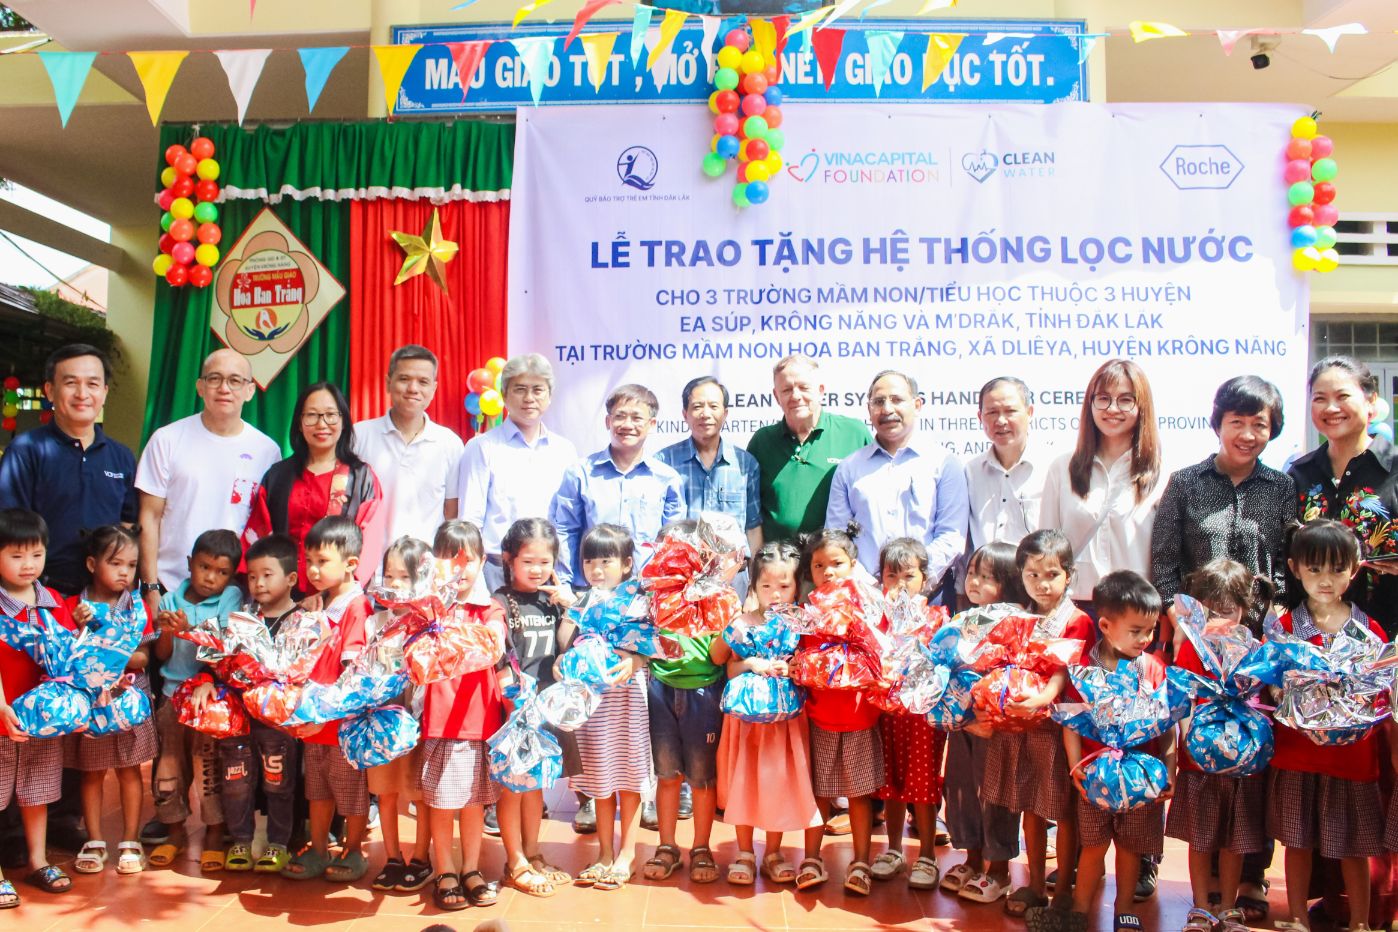 Ảnh chụp tập thể với nhà tài trợ.1 Roche Việt Nam và VinaCapital Foundation mang nước sạch đến với trẻ em Đắk Lắk